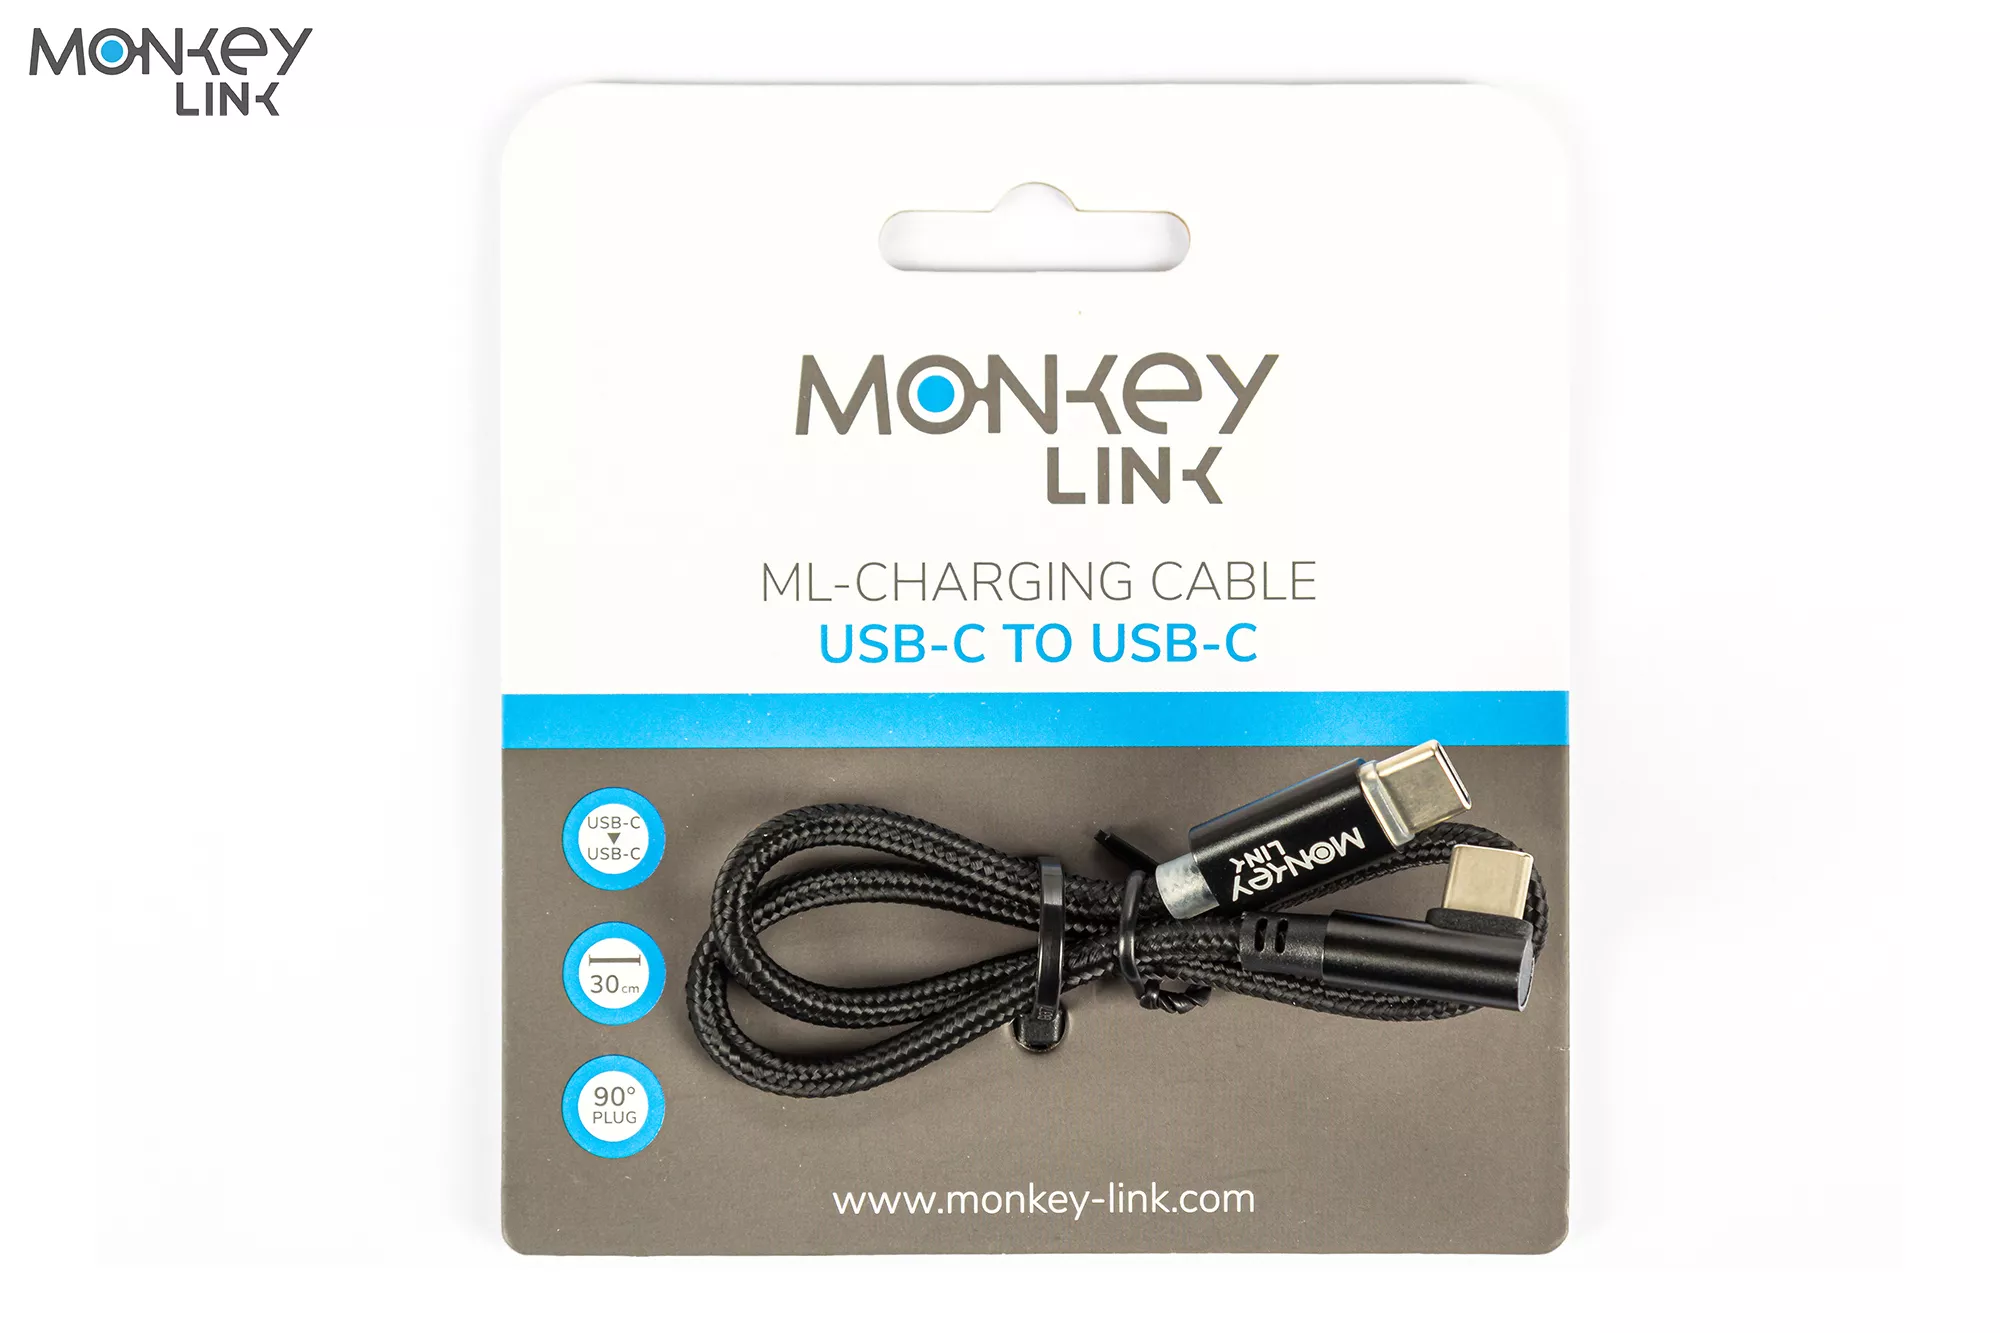 MonkeyLink ML-Charging Cable - Ladekabel USB-C / USB-C